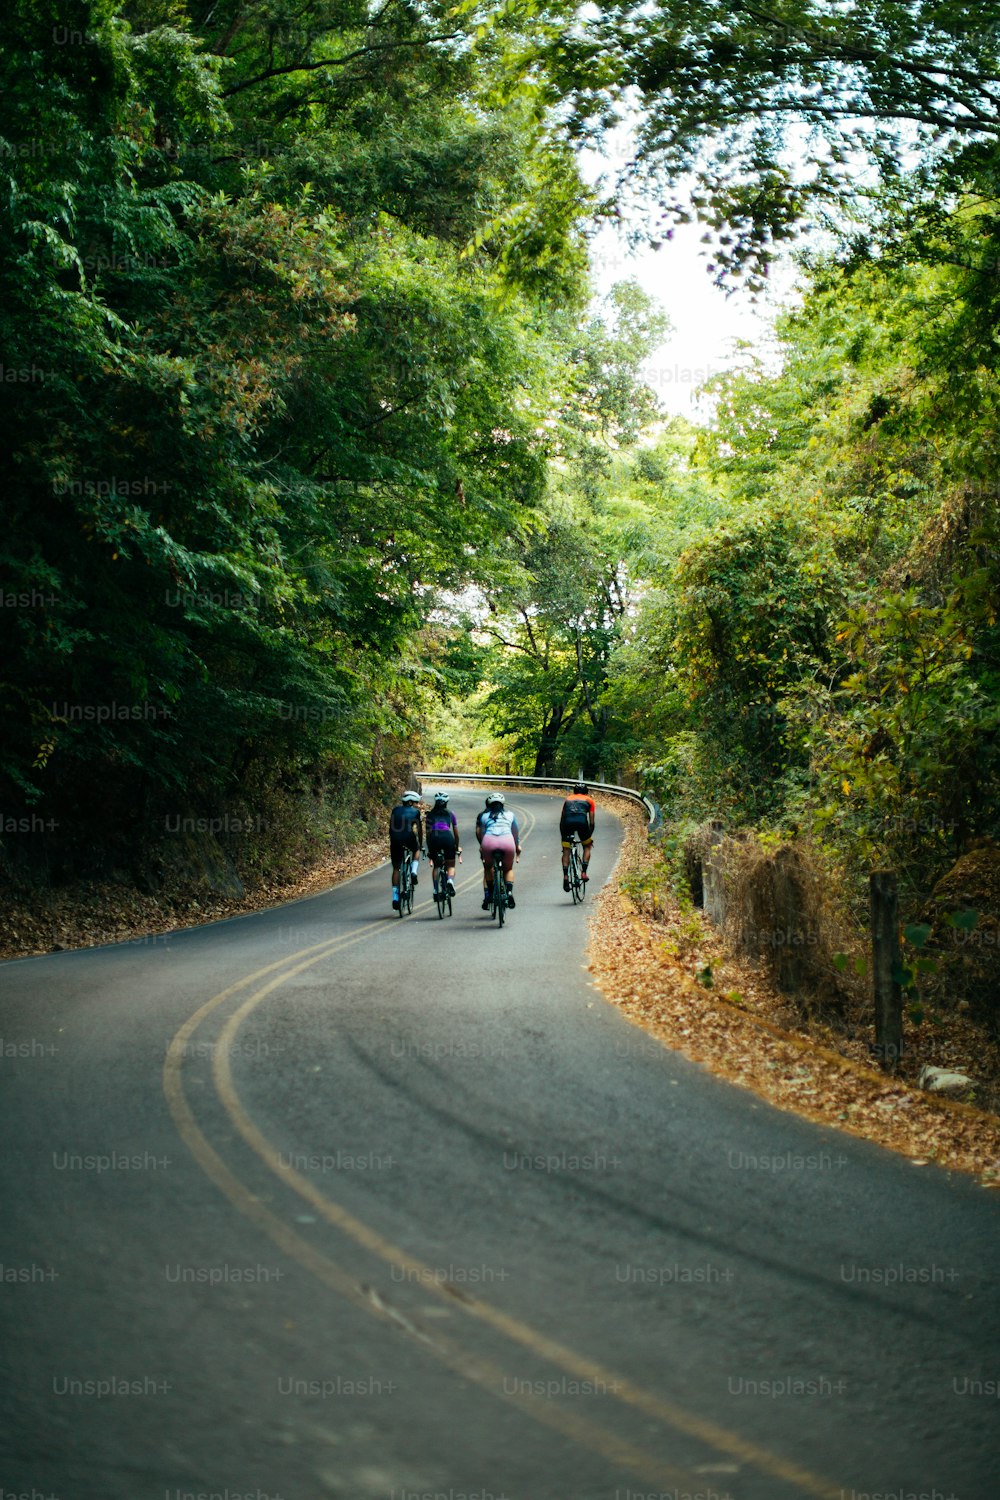 Un grupo de personas montando en bicicleta por una carretera con curvas